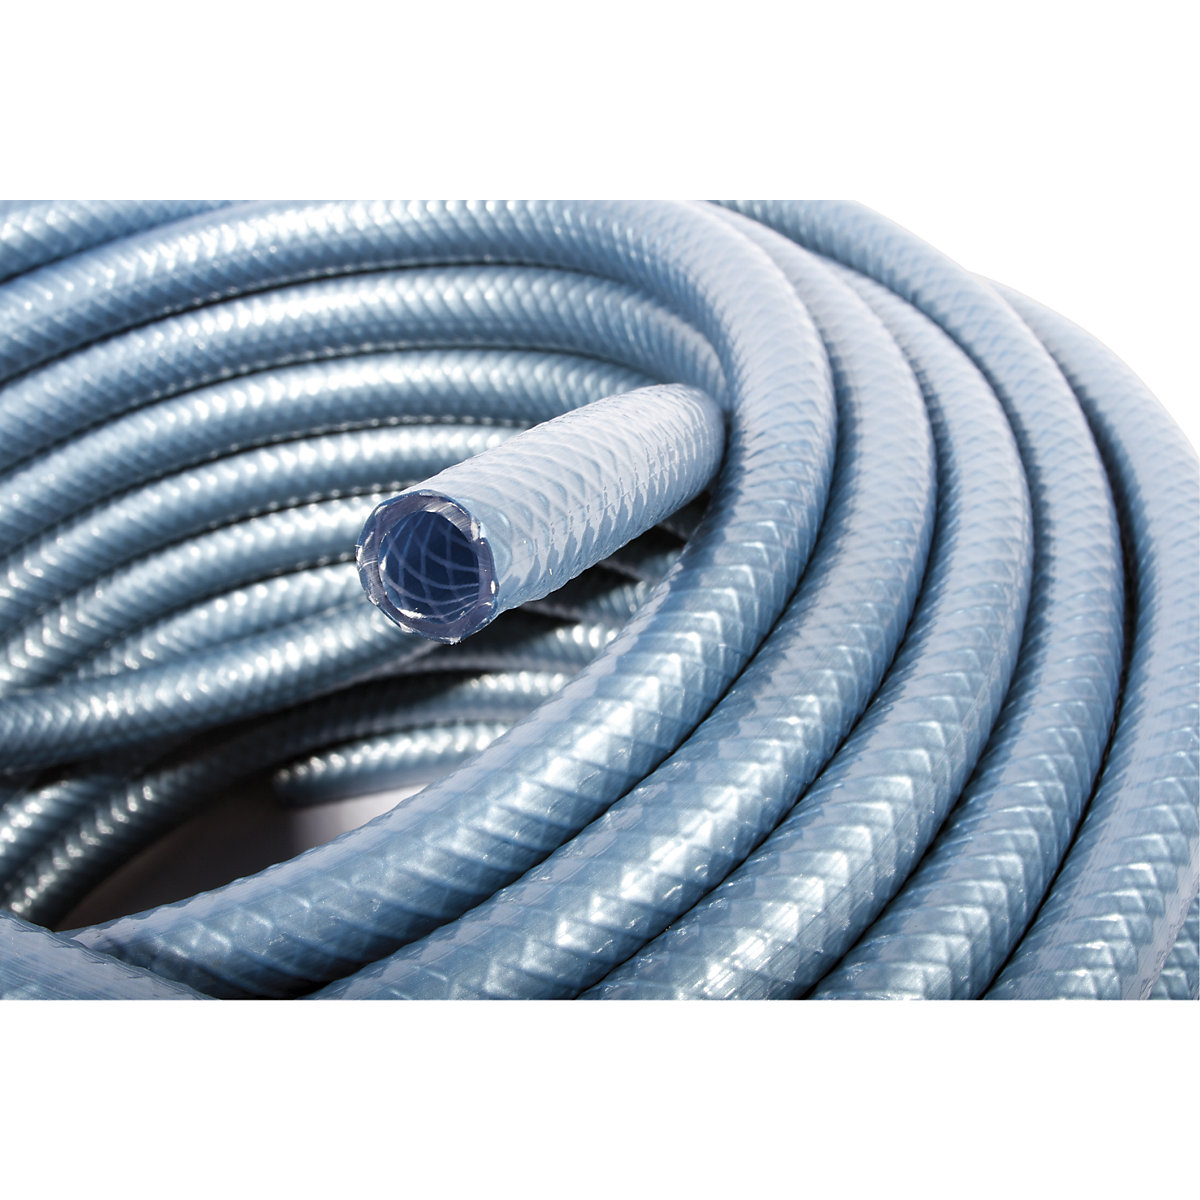 Compressed air hose made of PVC – COBA